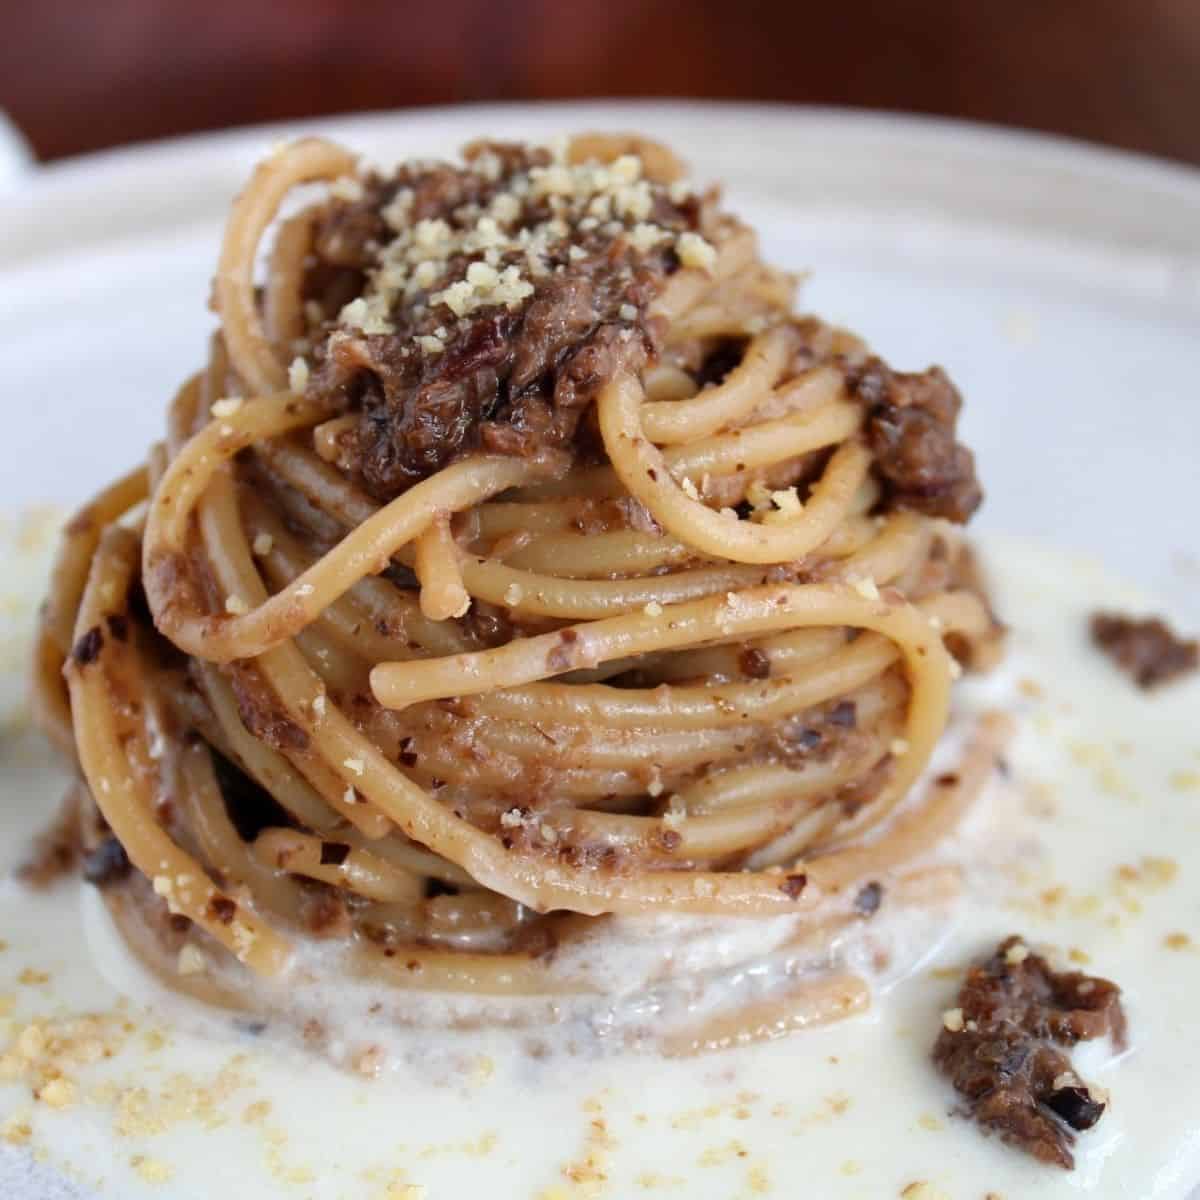 Spaghetti con radicchio Tardivo in un piatto bianco. La pasta poggia su uno strato di formaggio ed è condita con radicchio e gherigli di noci